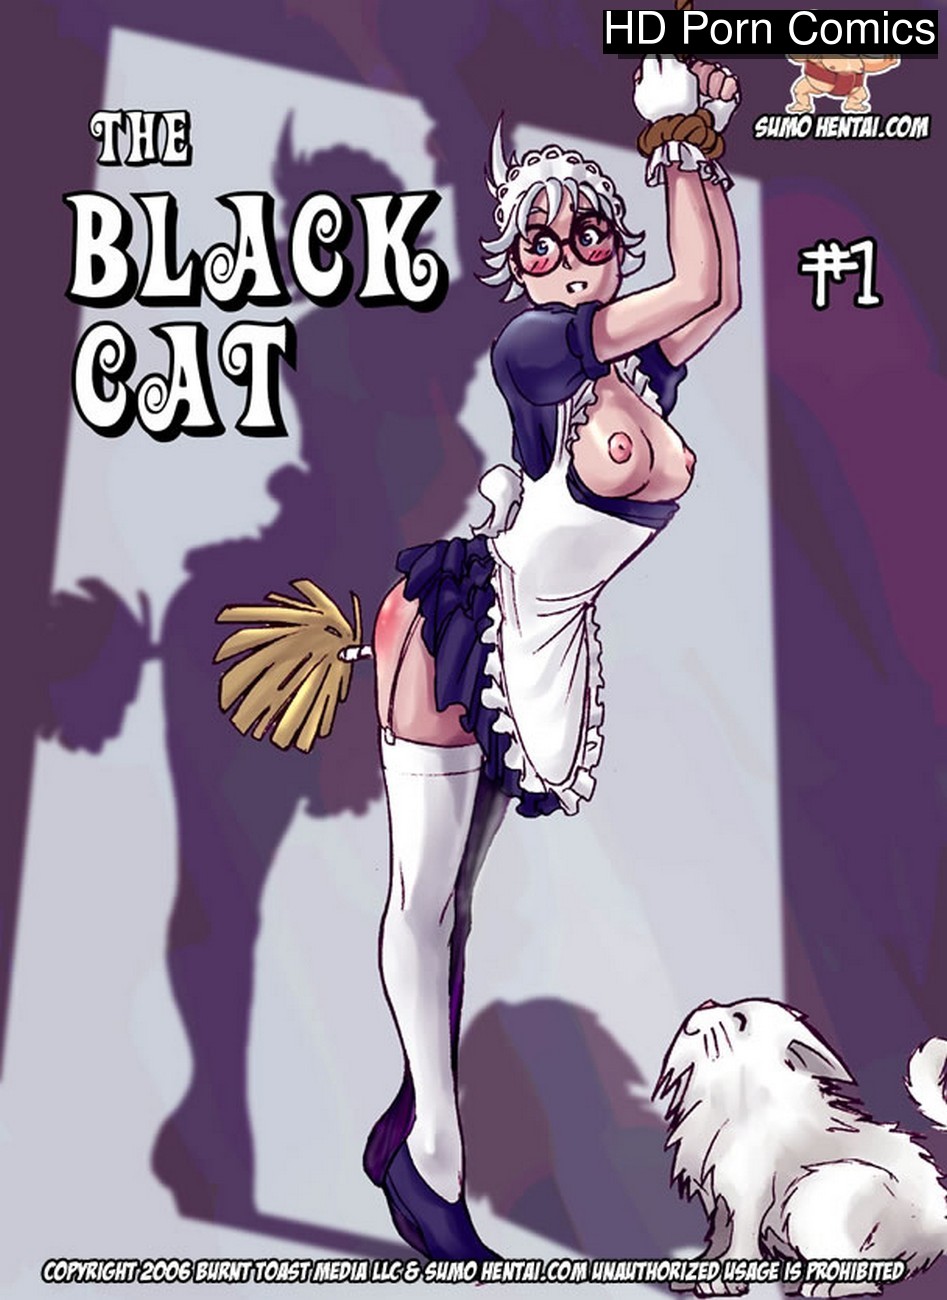 The Black Cat 1 Sex Comic HD Porn Comics